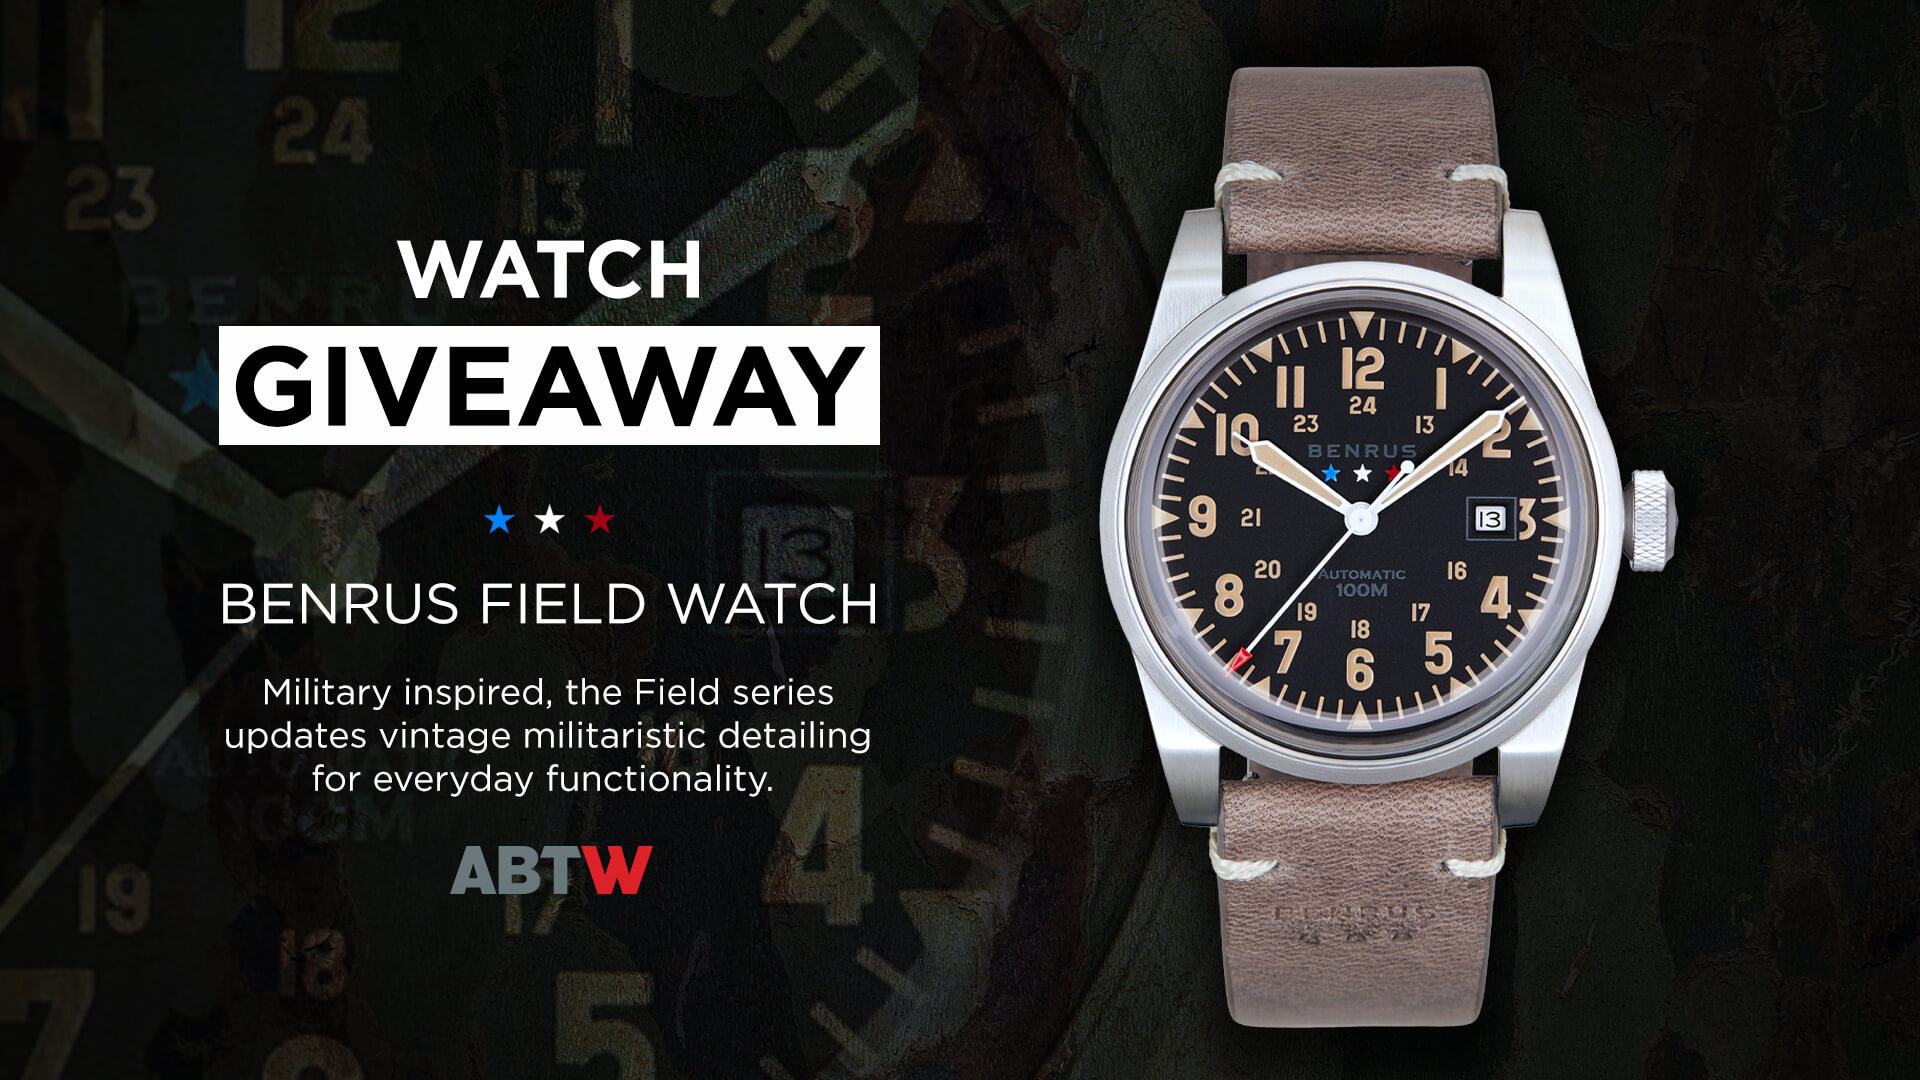 Winner Announced: Benrus Field Watch